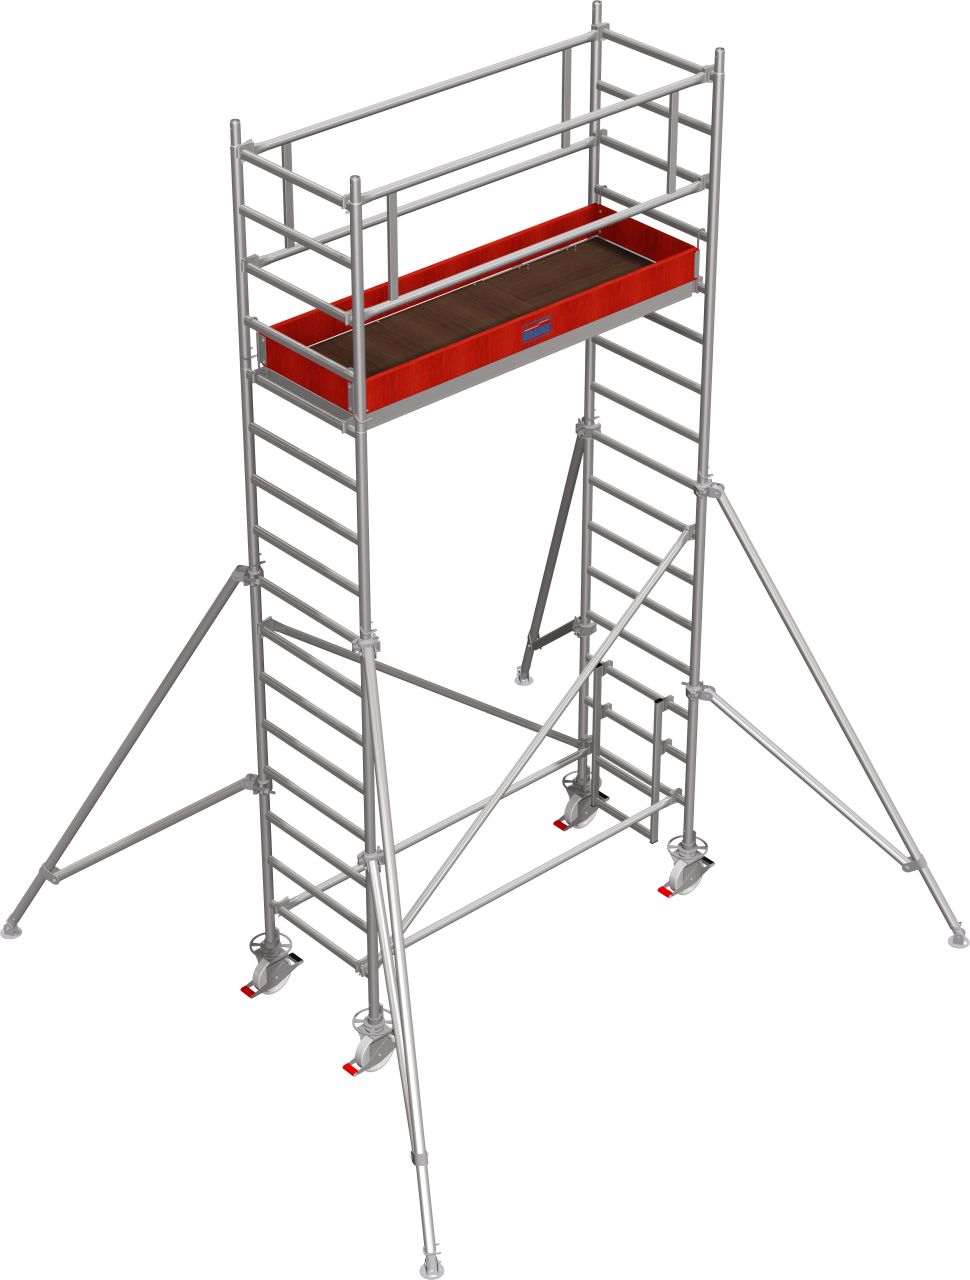 Дополнительное изображение Stabilo серии 1000 рабочая высота 5,2 м, размер площадки (2x0.75 м)